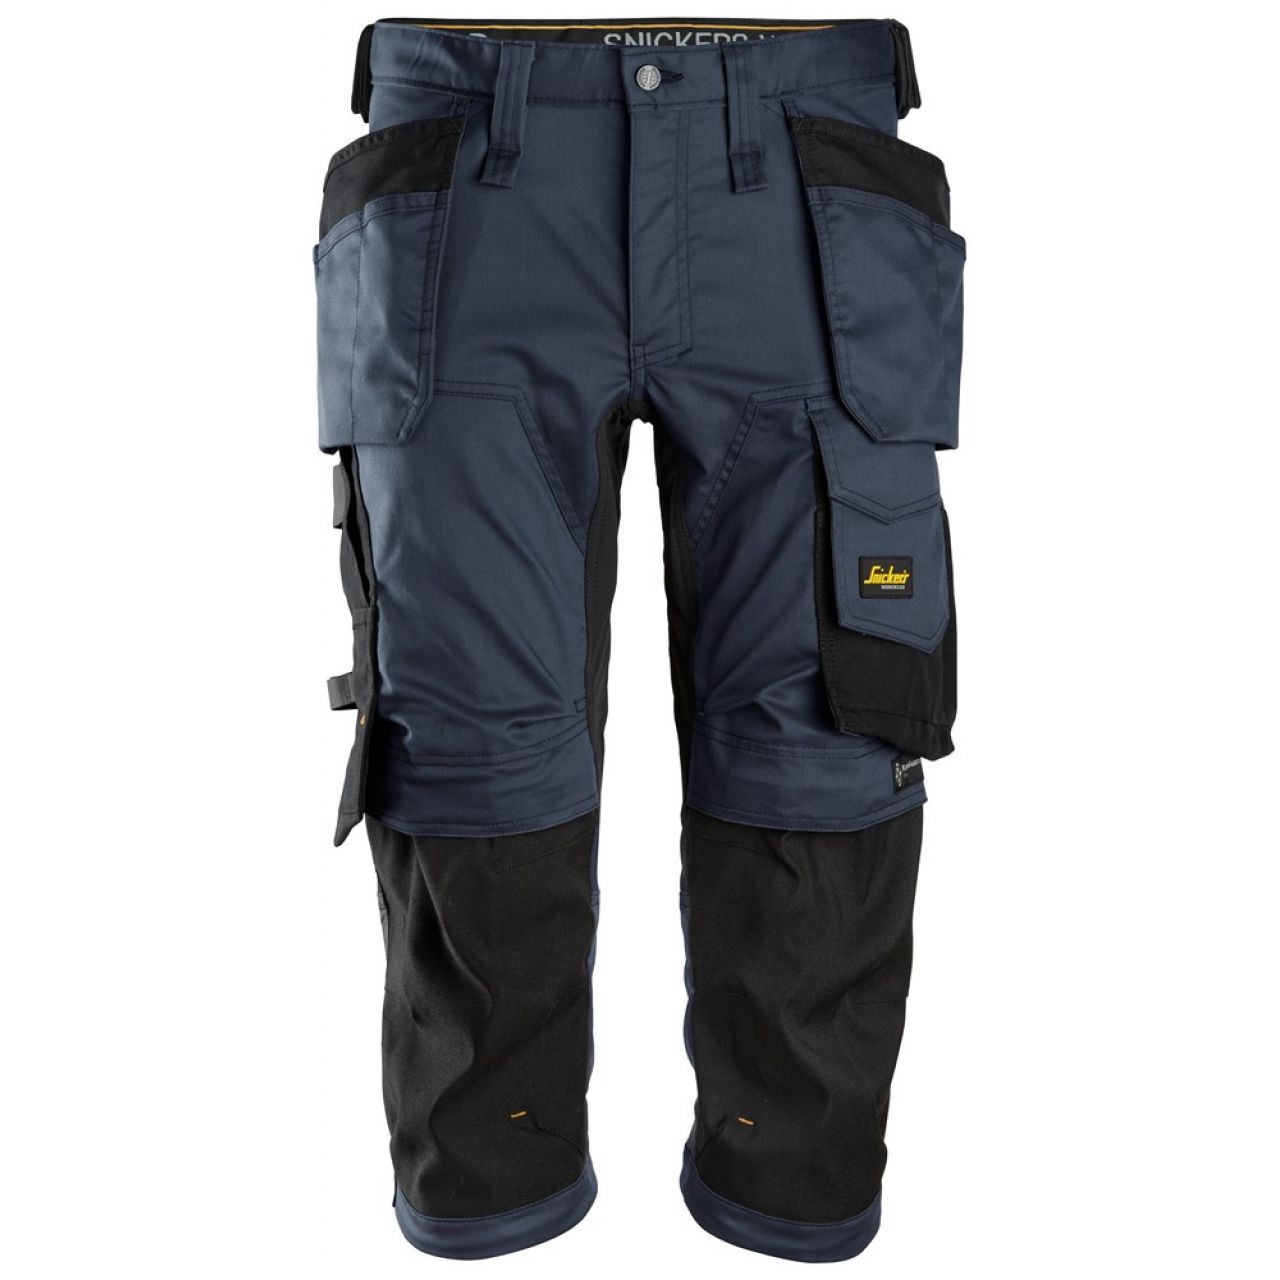 6142 Pantalones pirata de trabajo elasticos con bolsillos flotantes AllroundWork azul marino-negro talla 96